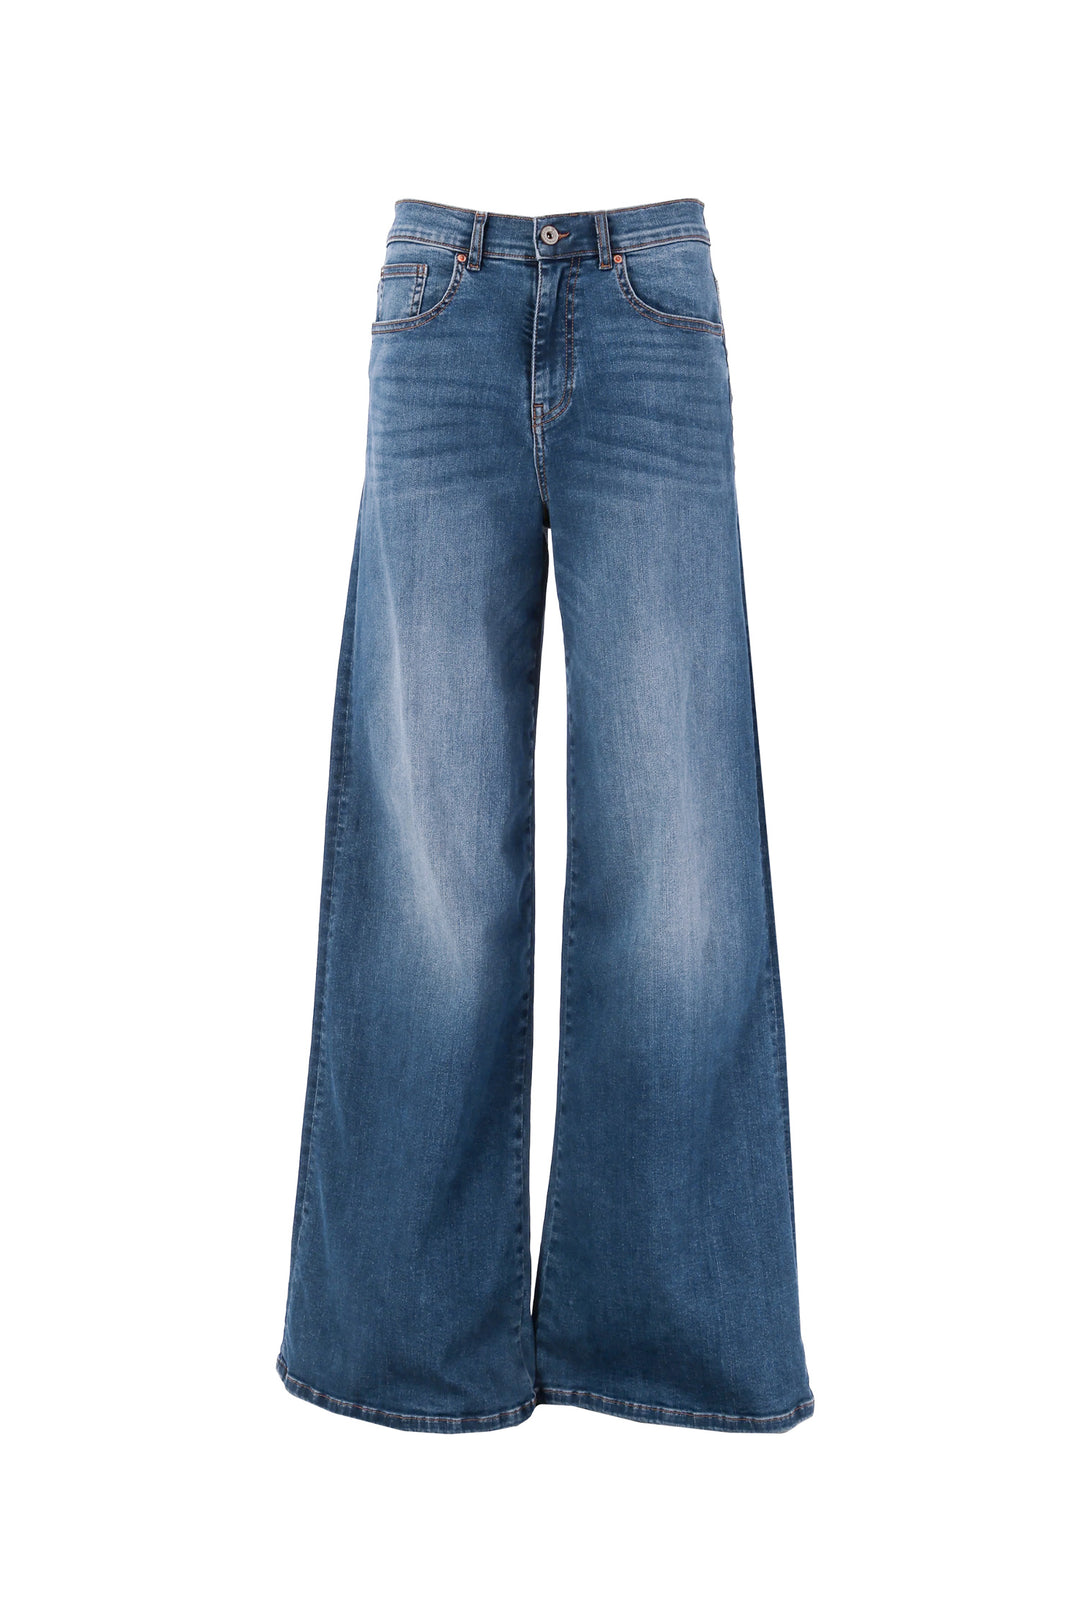 FRACOMINA Jeans flare in denim con lavaggio medio stone wash - Mancinelli 1954